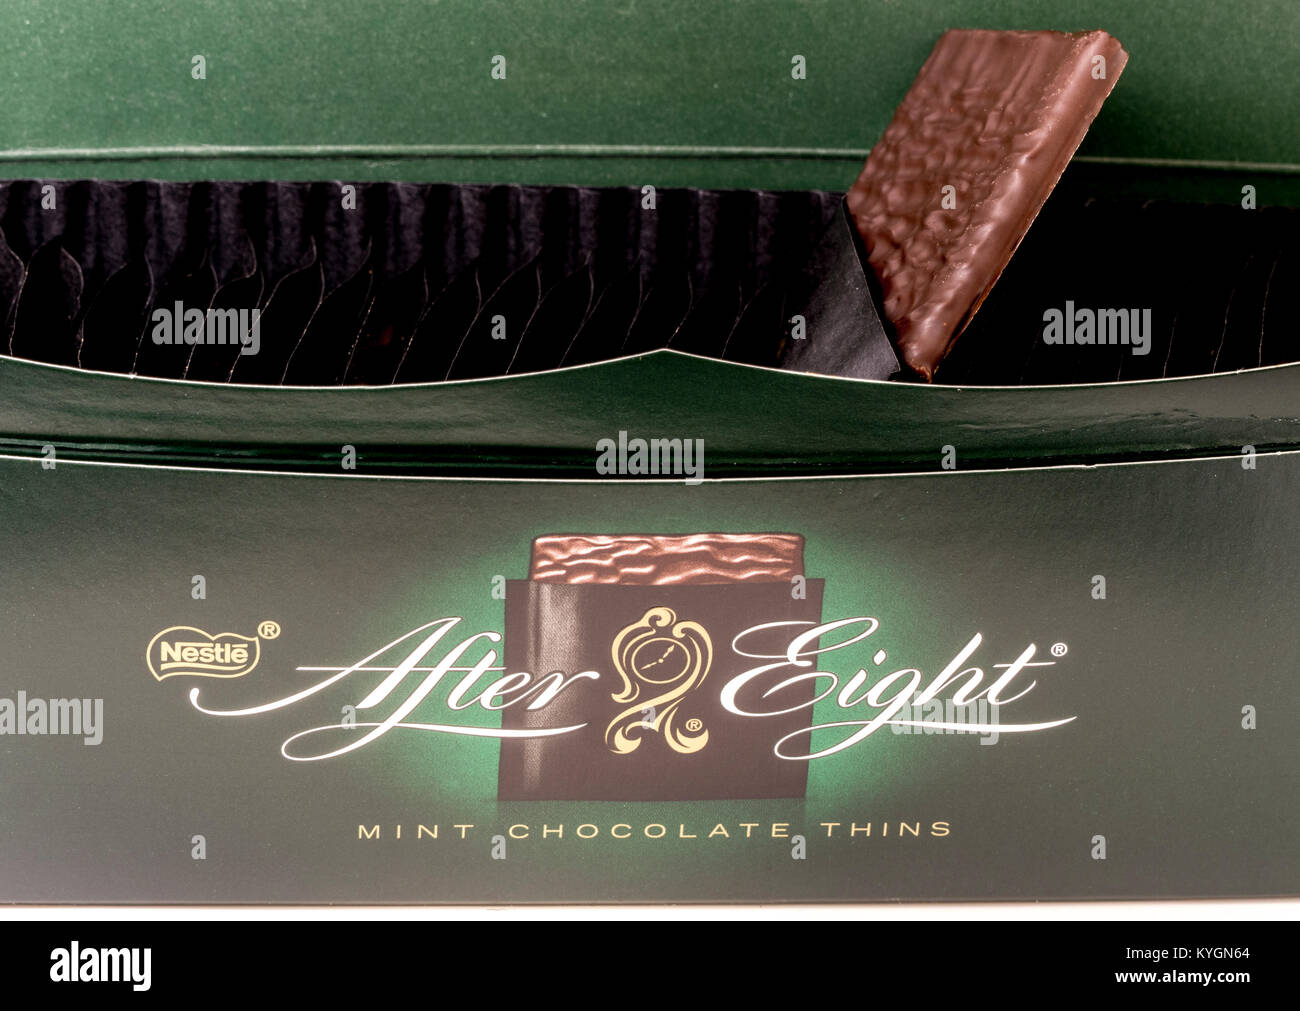 Nestlé tras ocho chocolates (después de ochos). Primer plano de una caja abierta y logotipo, con una forma cuadrada de menta chocolate oscuro delgada que sobresale de su envoltura. Foto de stock